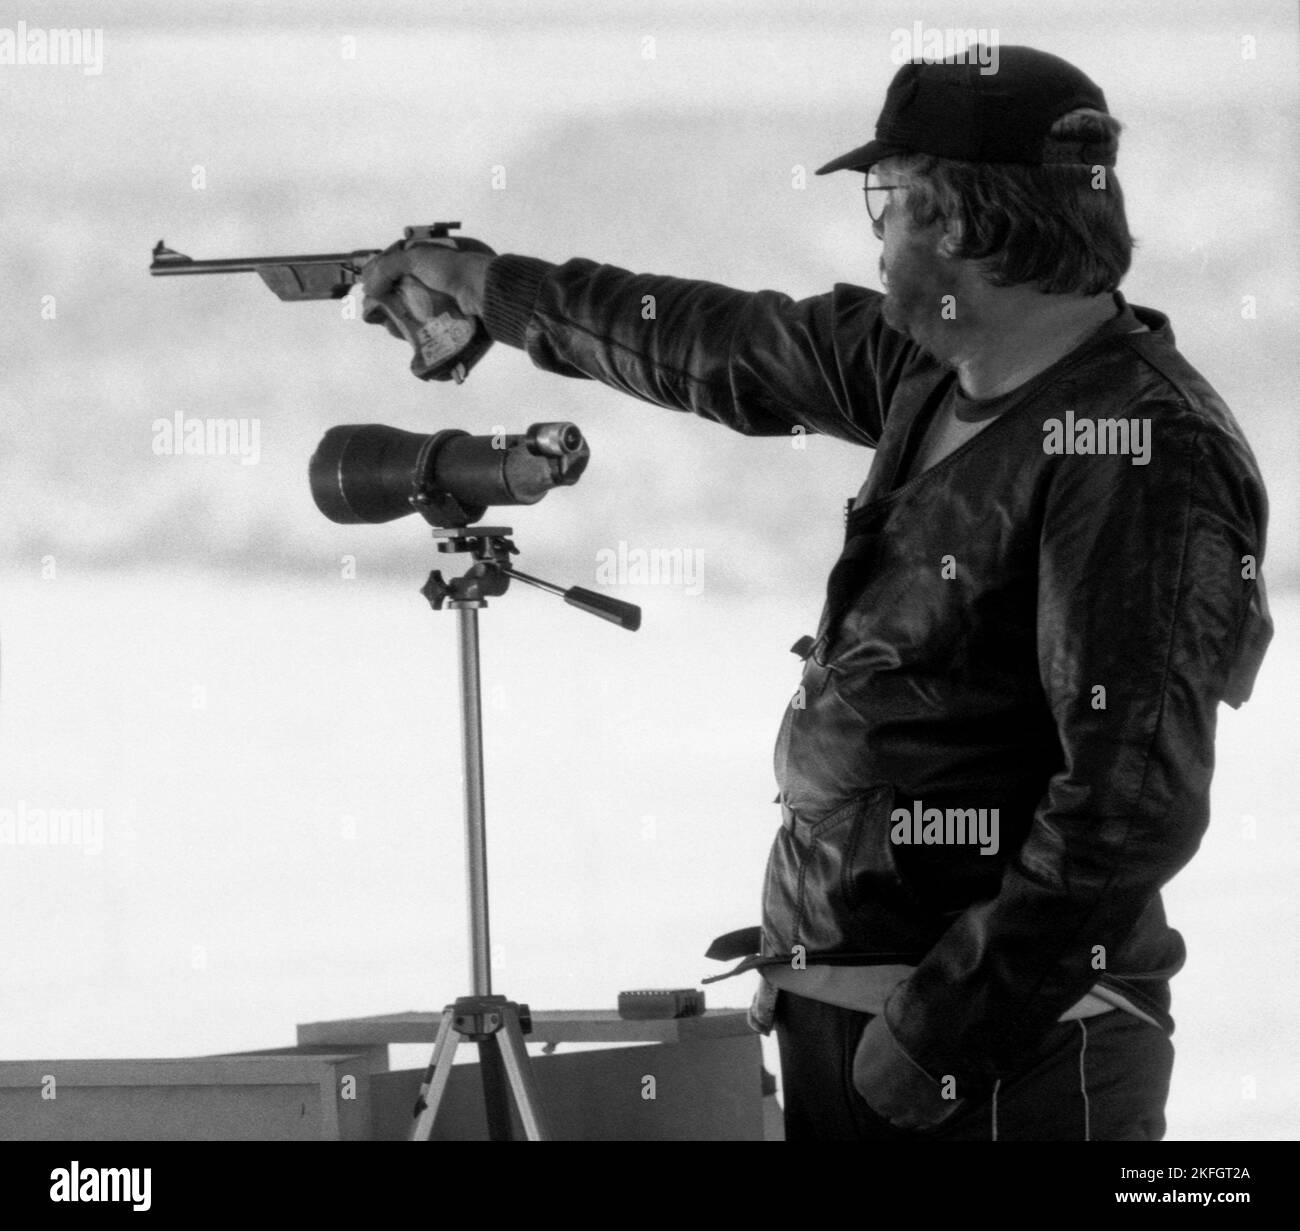 OLYMPISCHE SOMMERSPIELE IN LOS ANGELES USA 1984 Ove Gunnarsson Schweden auf Schießstand in Schießen freie Pistole Stockfoto